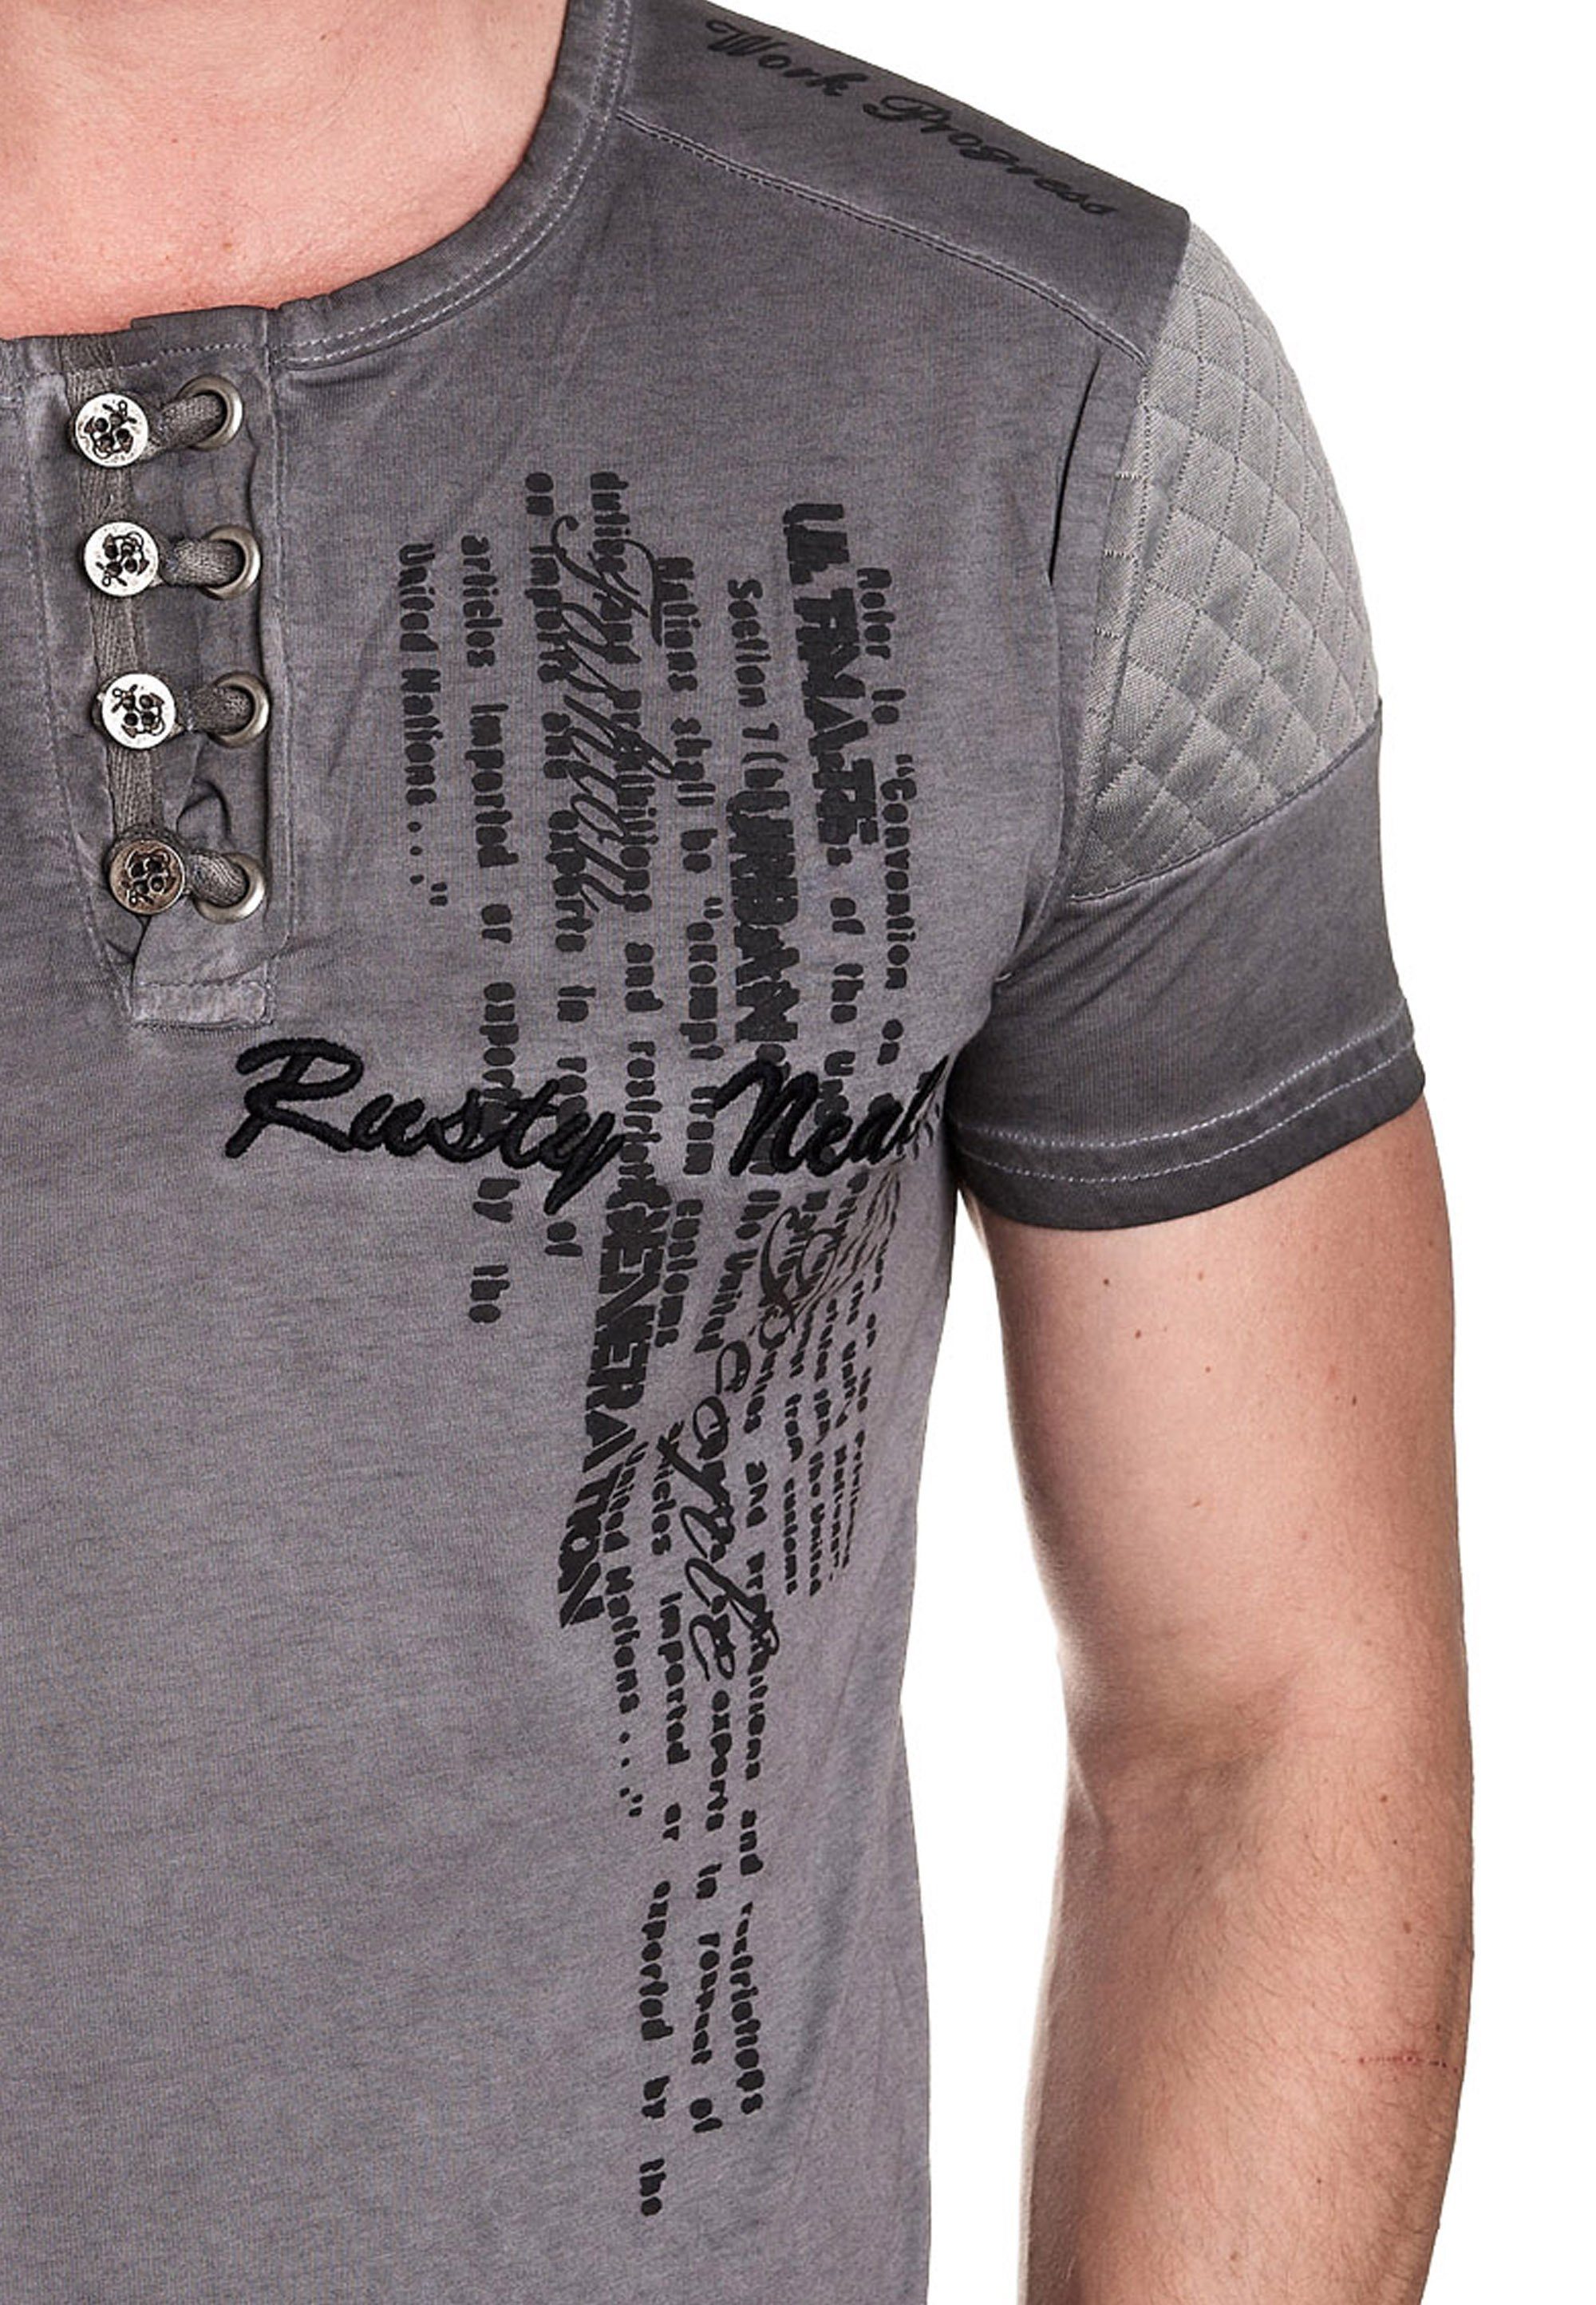 Rusty Knopfleiste mit anthrazit Neal schicker T-Shirt